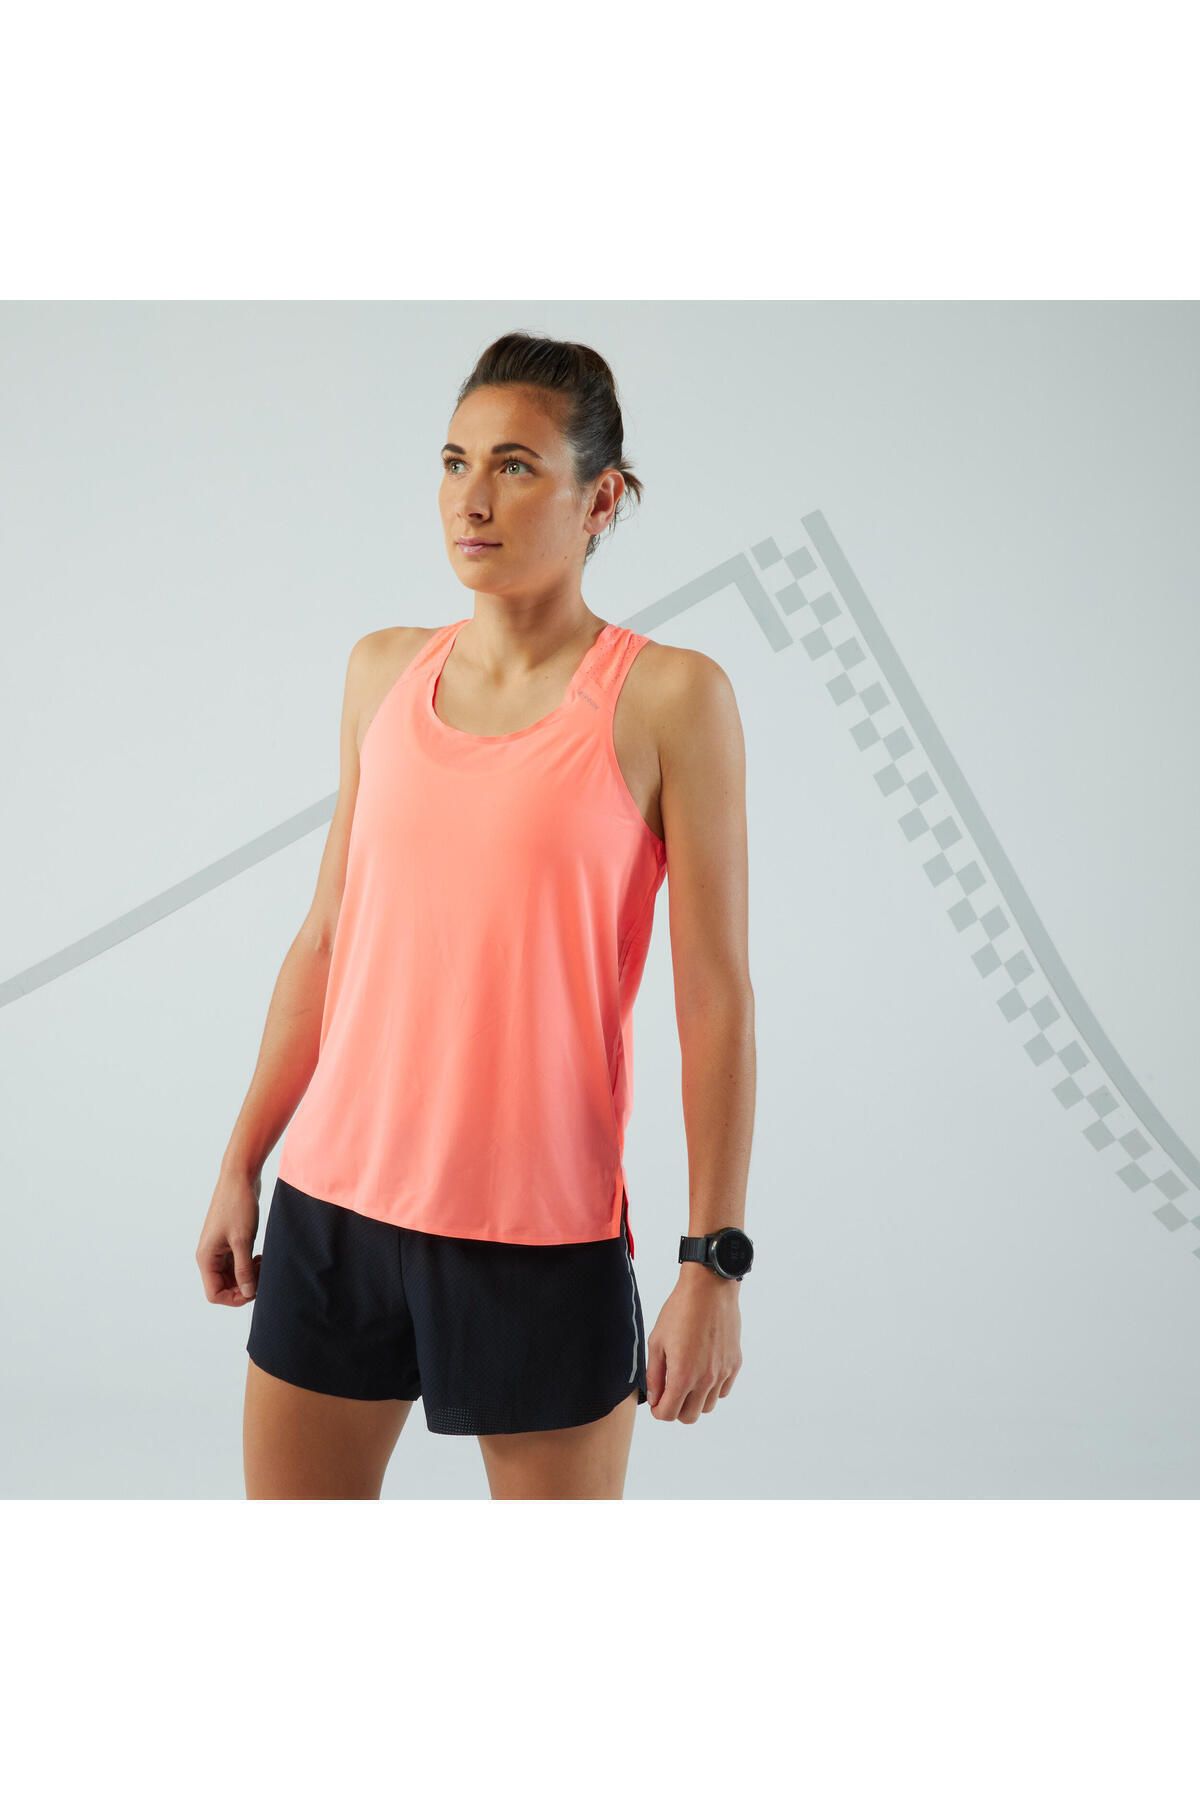 Decathlon Kadın Koşu Sporcu Atleti - Mercan Rengi - Light